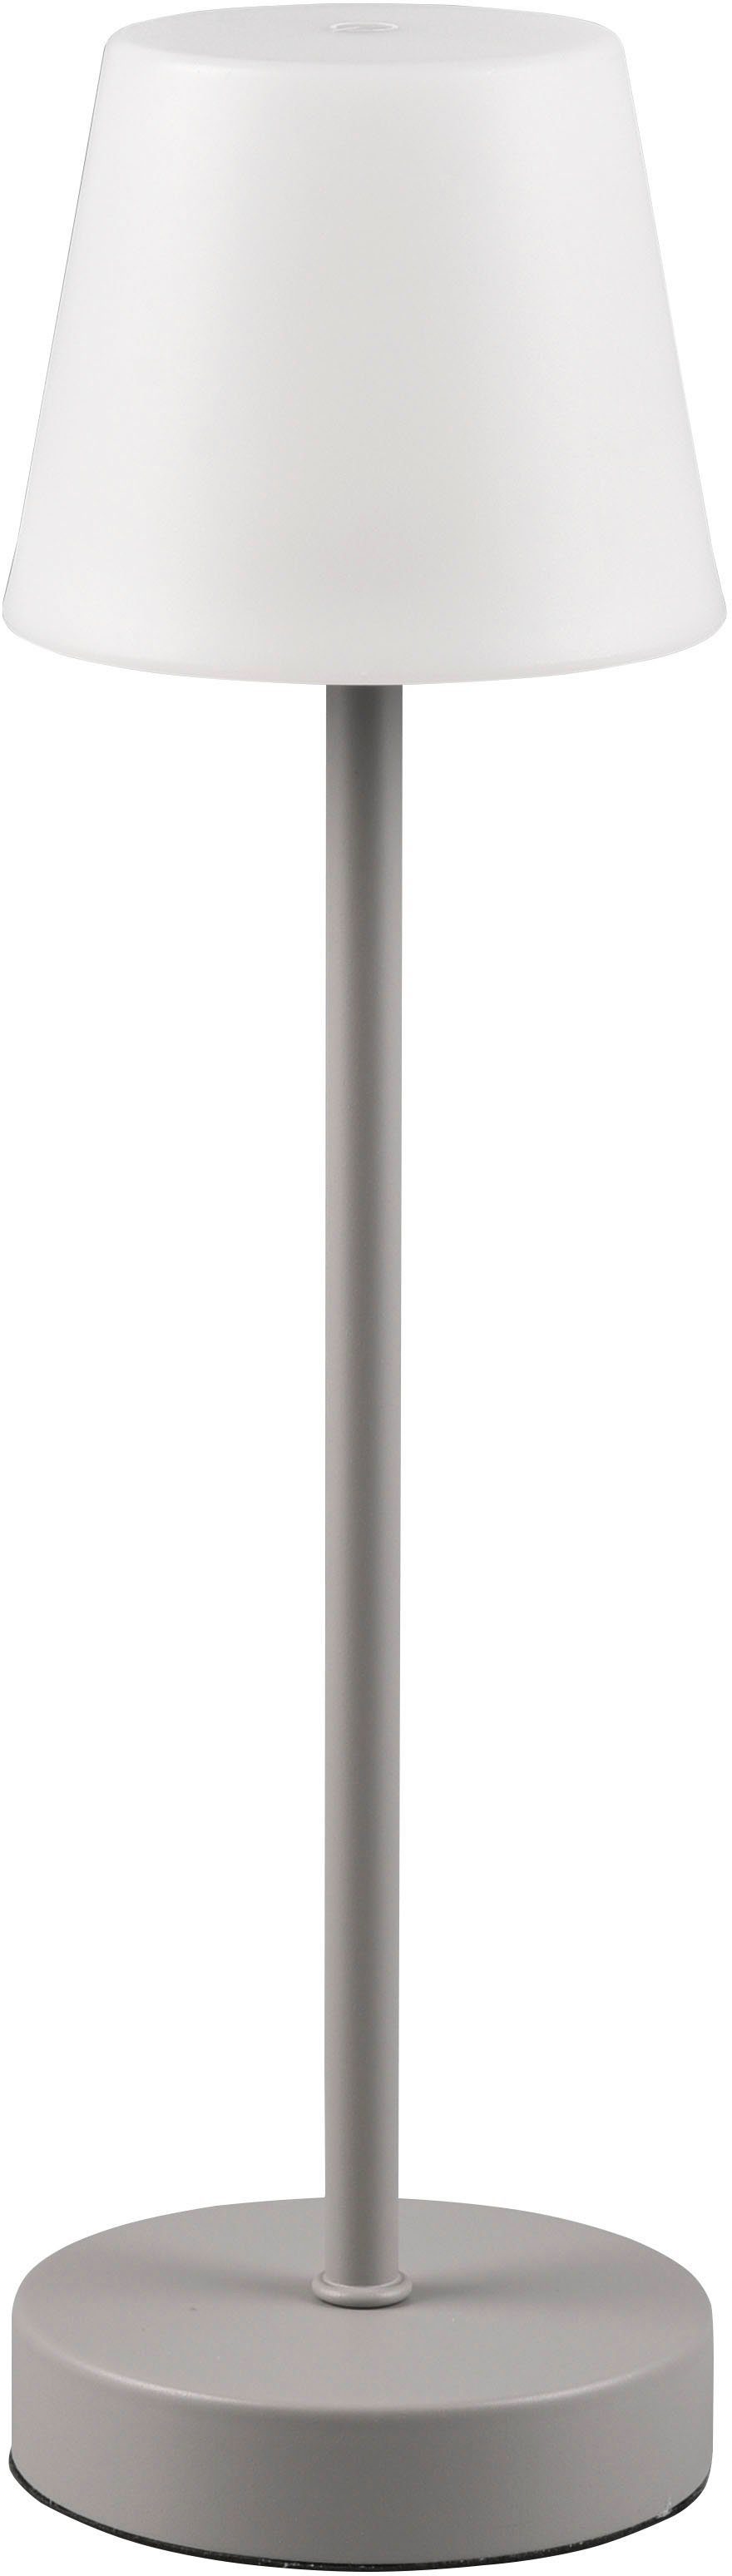 TRIO Leuchten LED Außen-Tischleuchte Martinez, Dimmfunktion, USB-Ladefunktion, LED fest integriert, Farbwechsler, warmweiß - kaltweiß, Touch Tischlampe dimmbar Lichtfarbe einstellbar, Akku, USB-C Anschluss grau